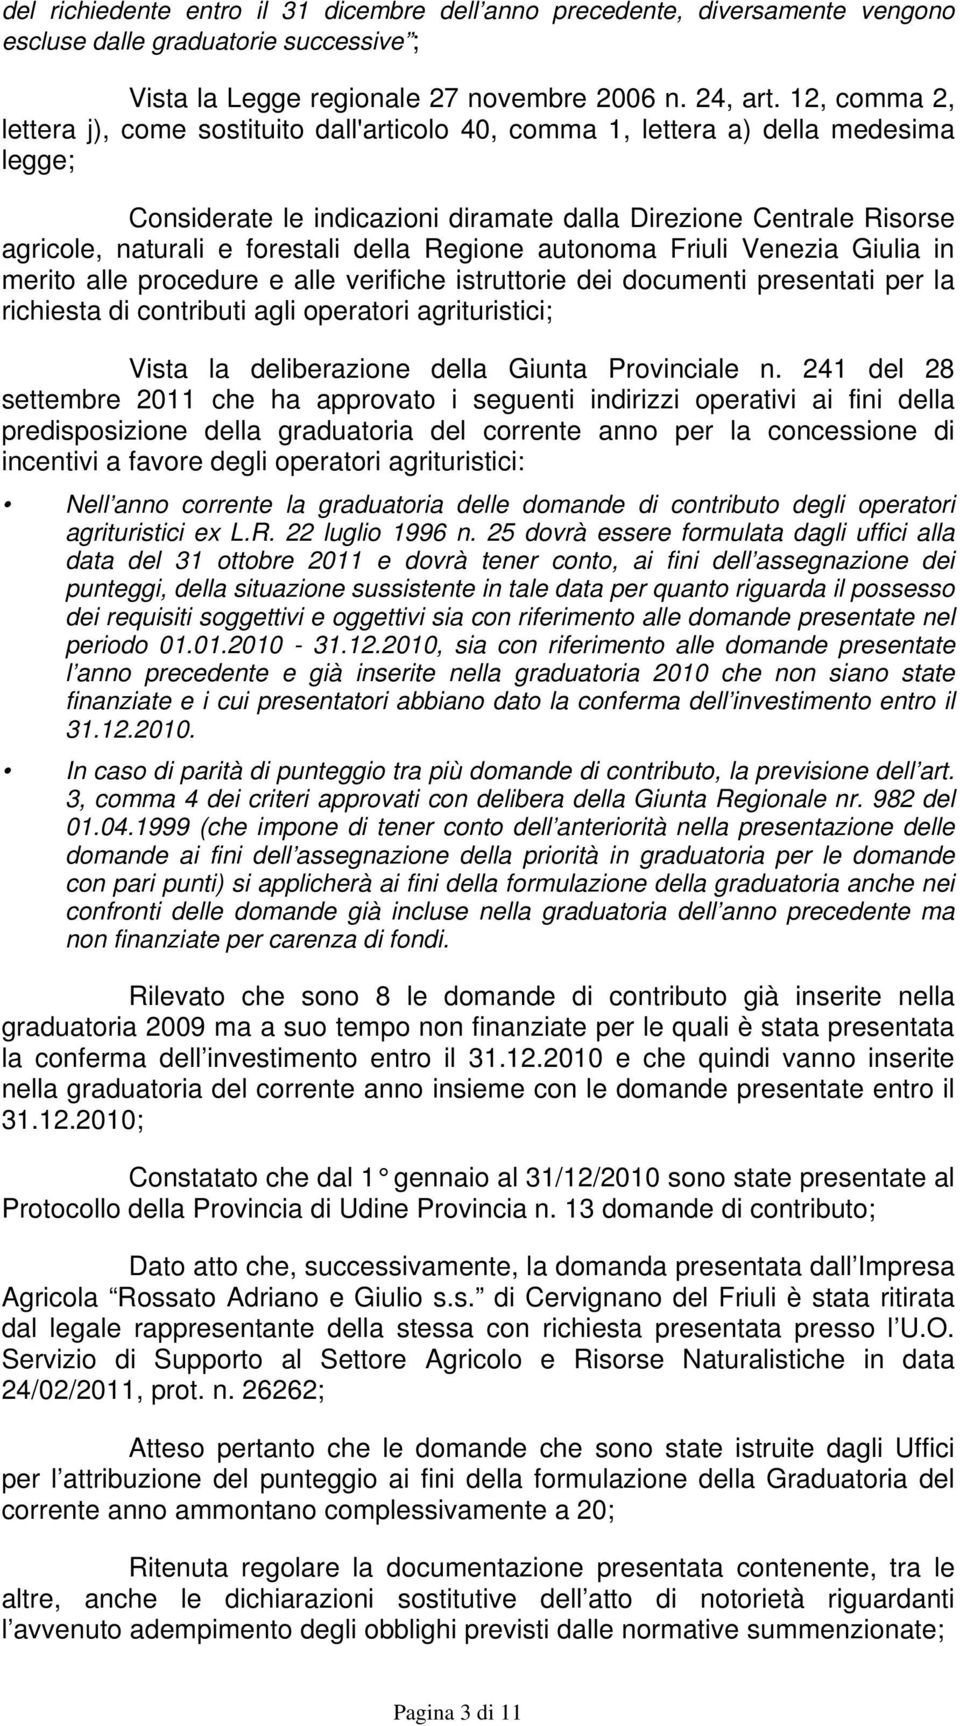 forestali della Regione autonoma Friuli Venezia Giulia in merito alle procedure e alle verifiche istruttorie dei documenti presentati per la richiesta di contributi agli operatori agrituristici;